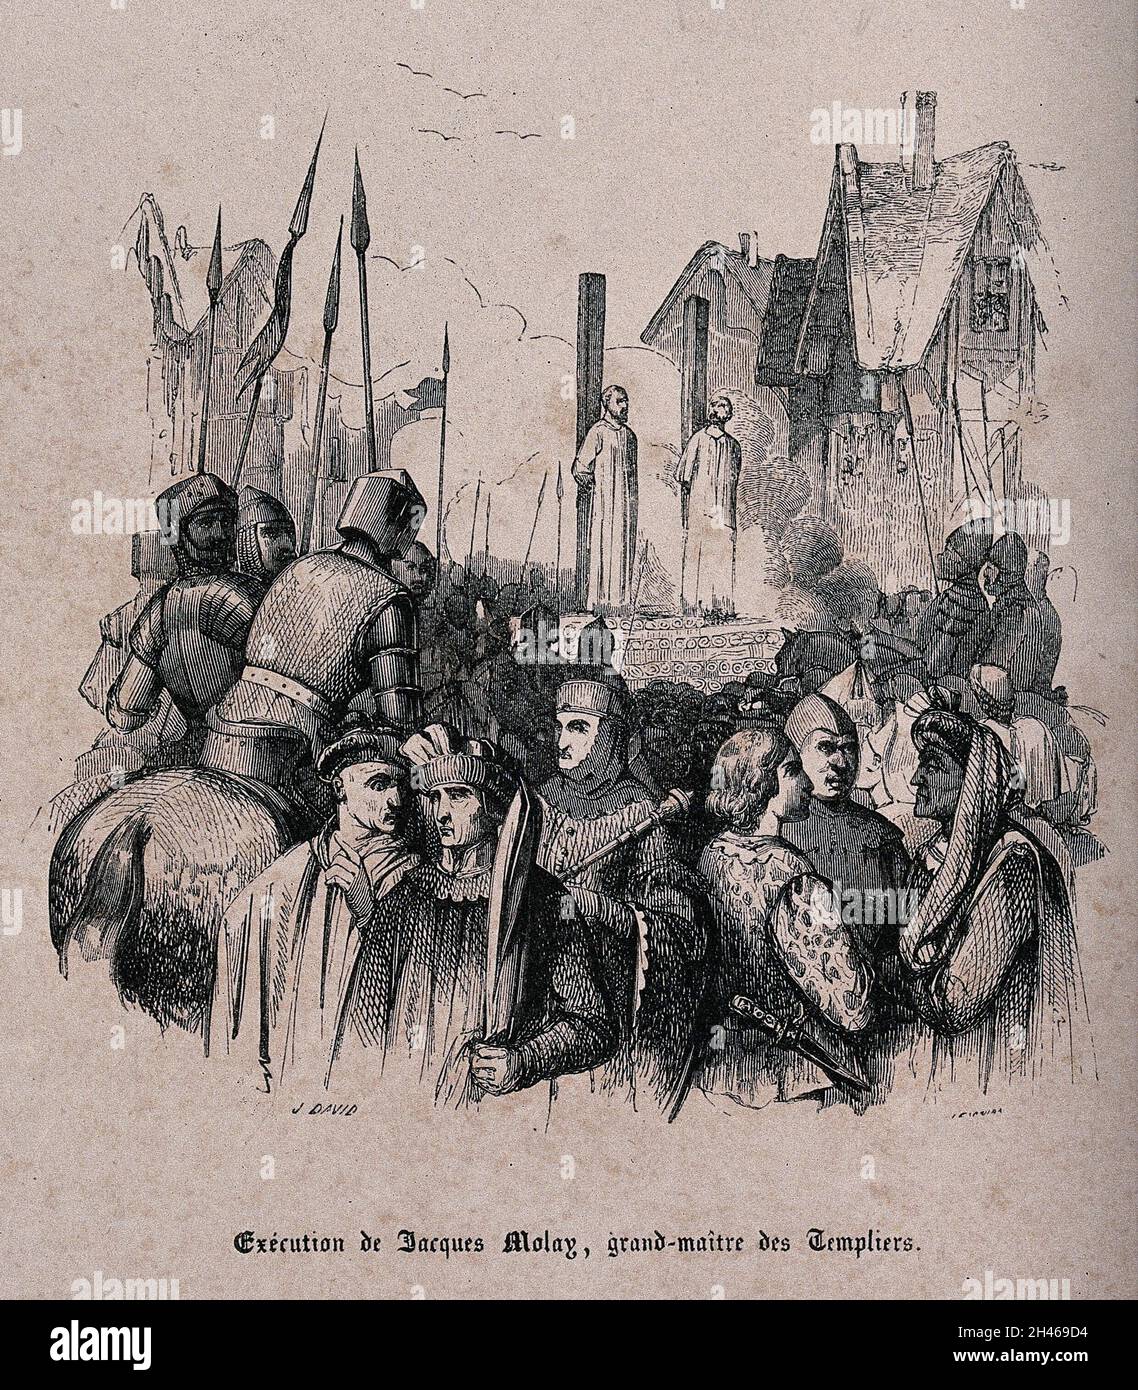 Jacques de Molay, der letzte Großmeister der Tempelritter, verbrannte in Paris lebend als verfallender Ketzer. Holzstich von J. David. Stockfoto